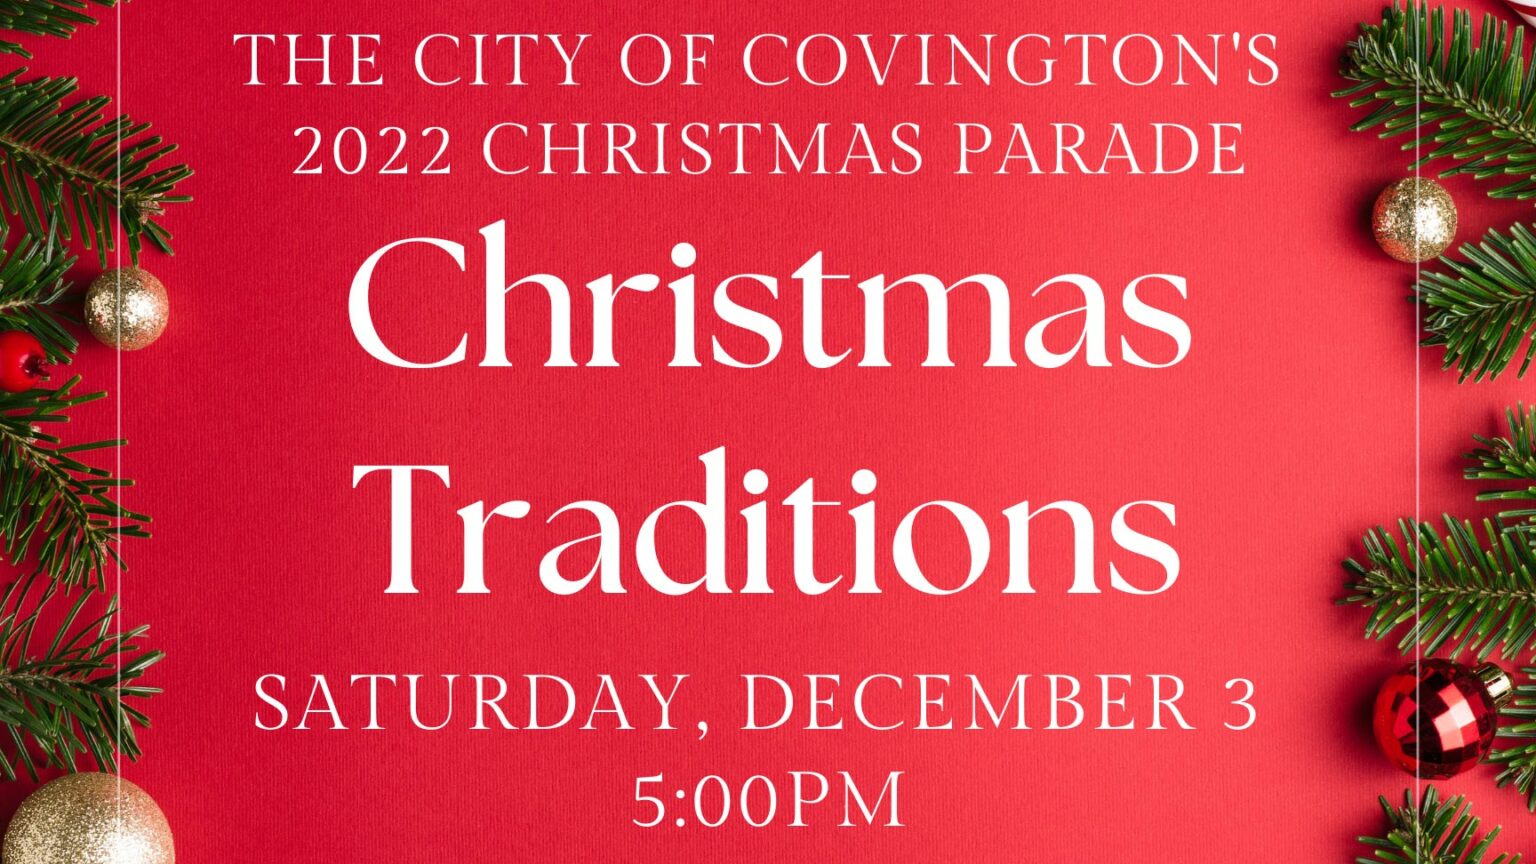 2022 Christmas Parade Covington City